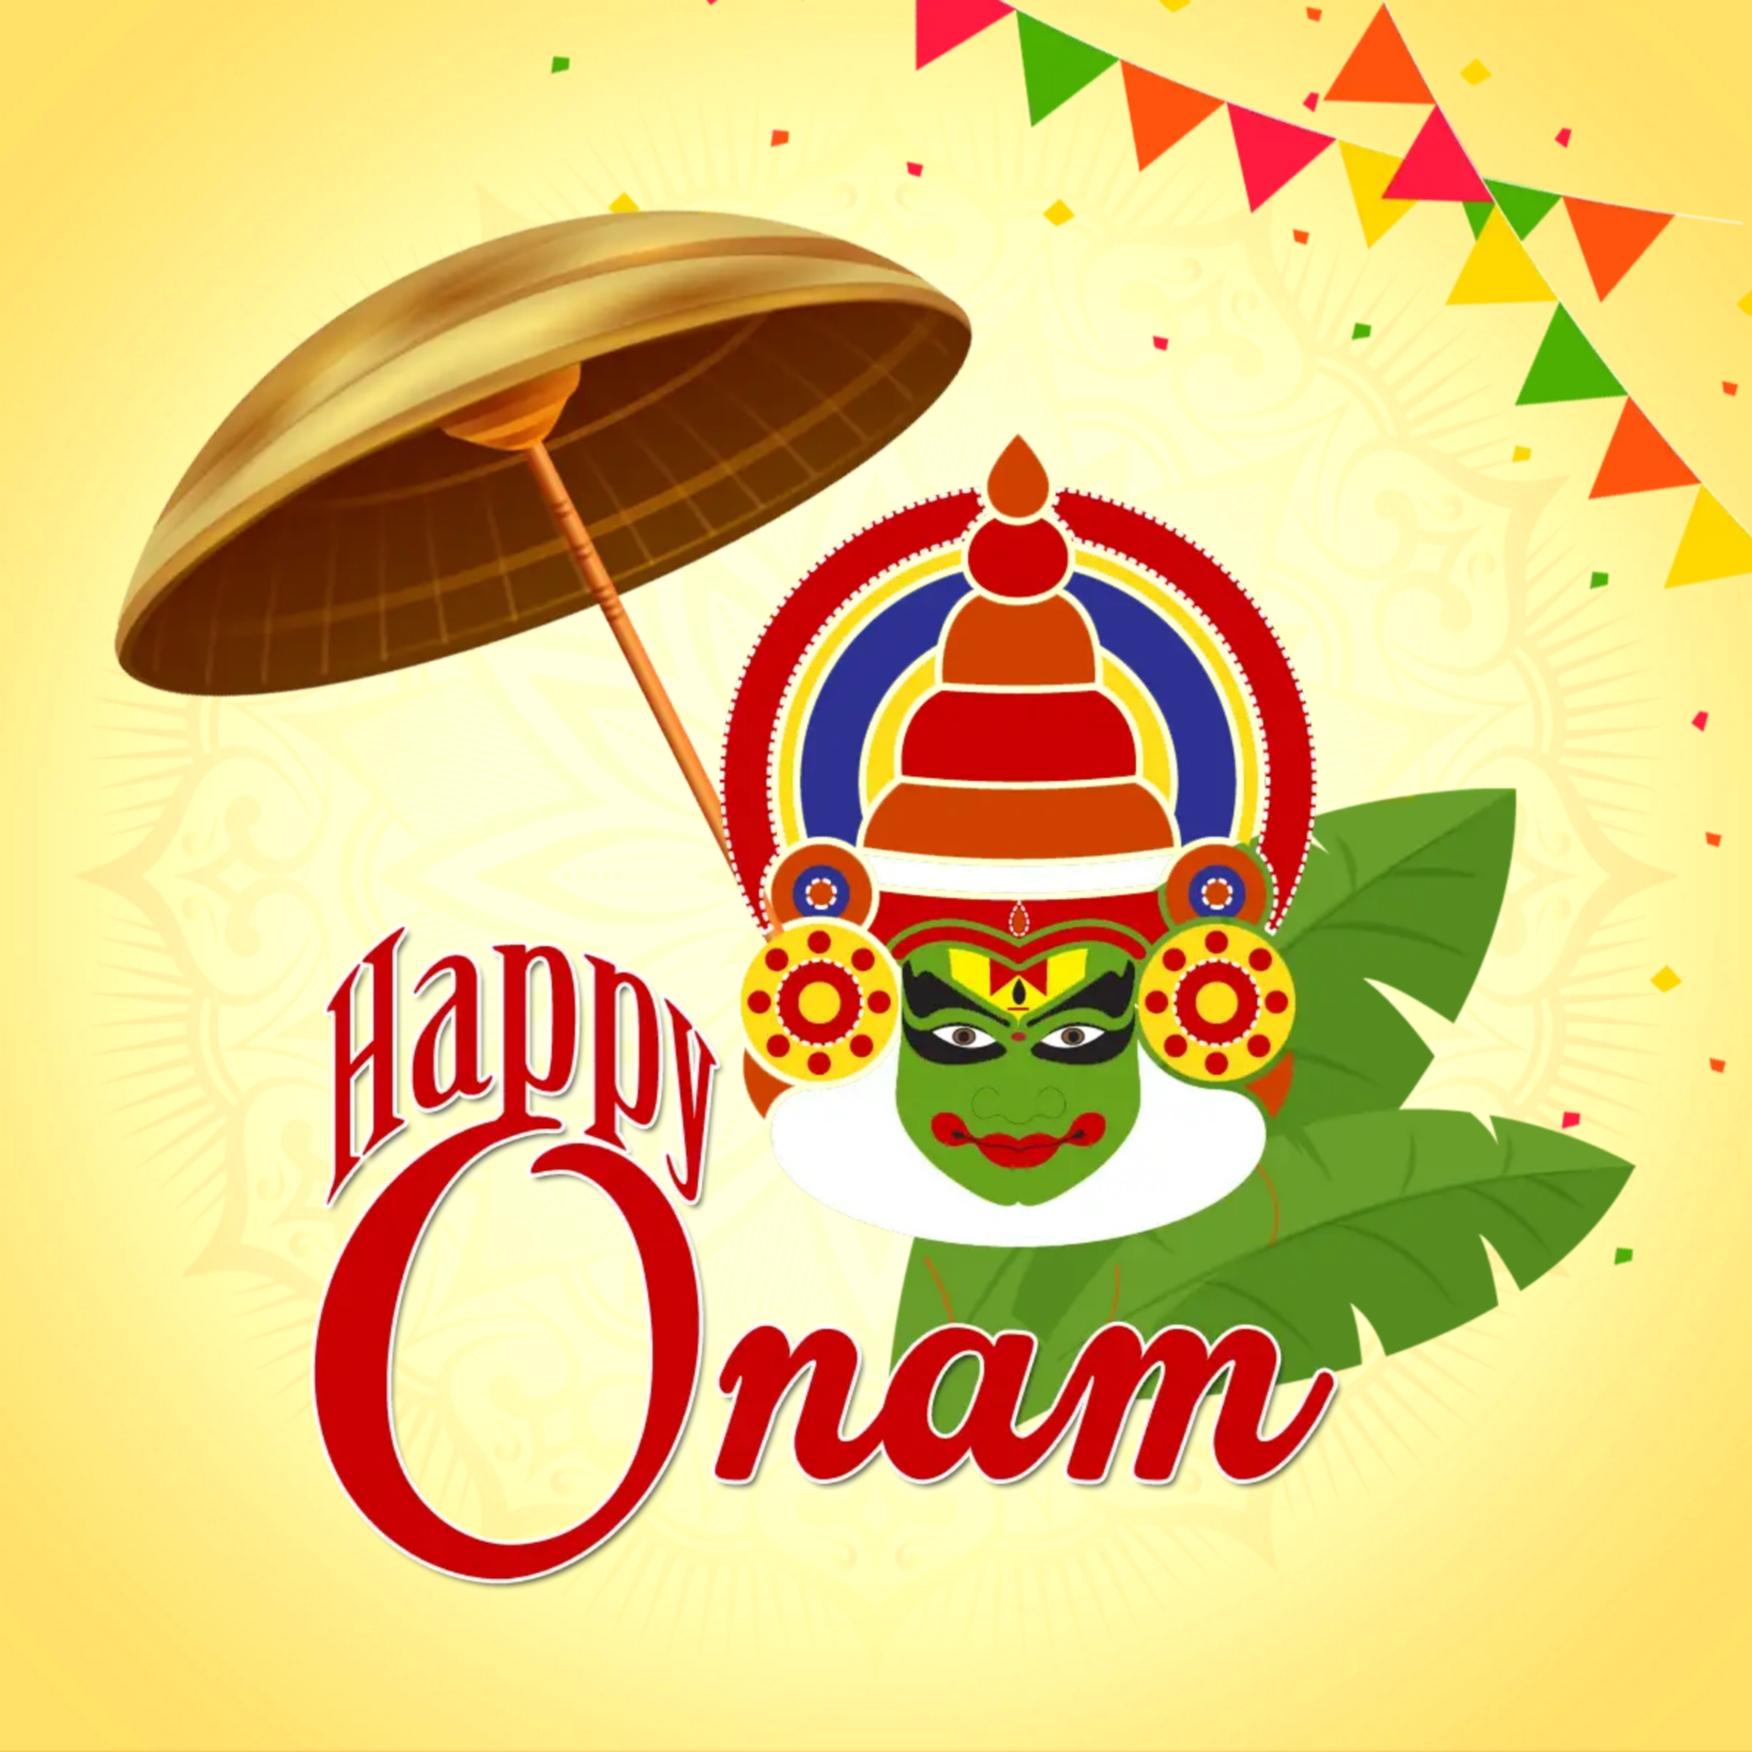 Happy Onam Wishes Images